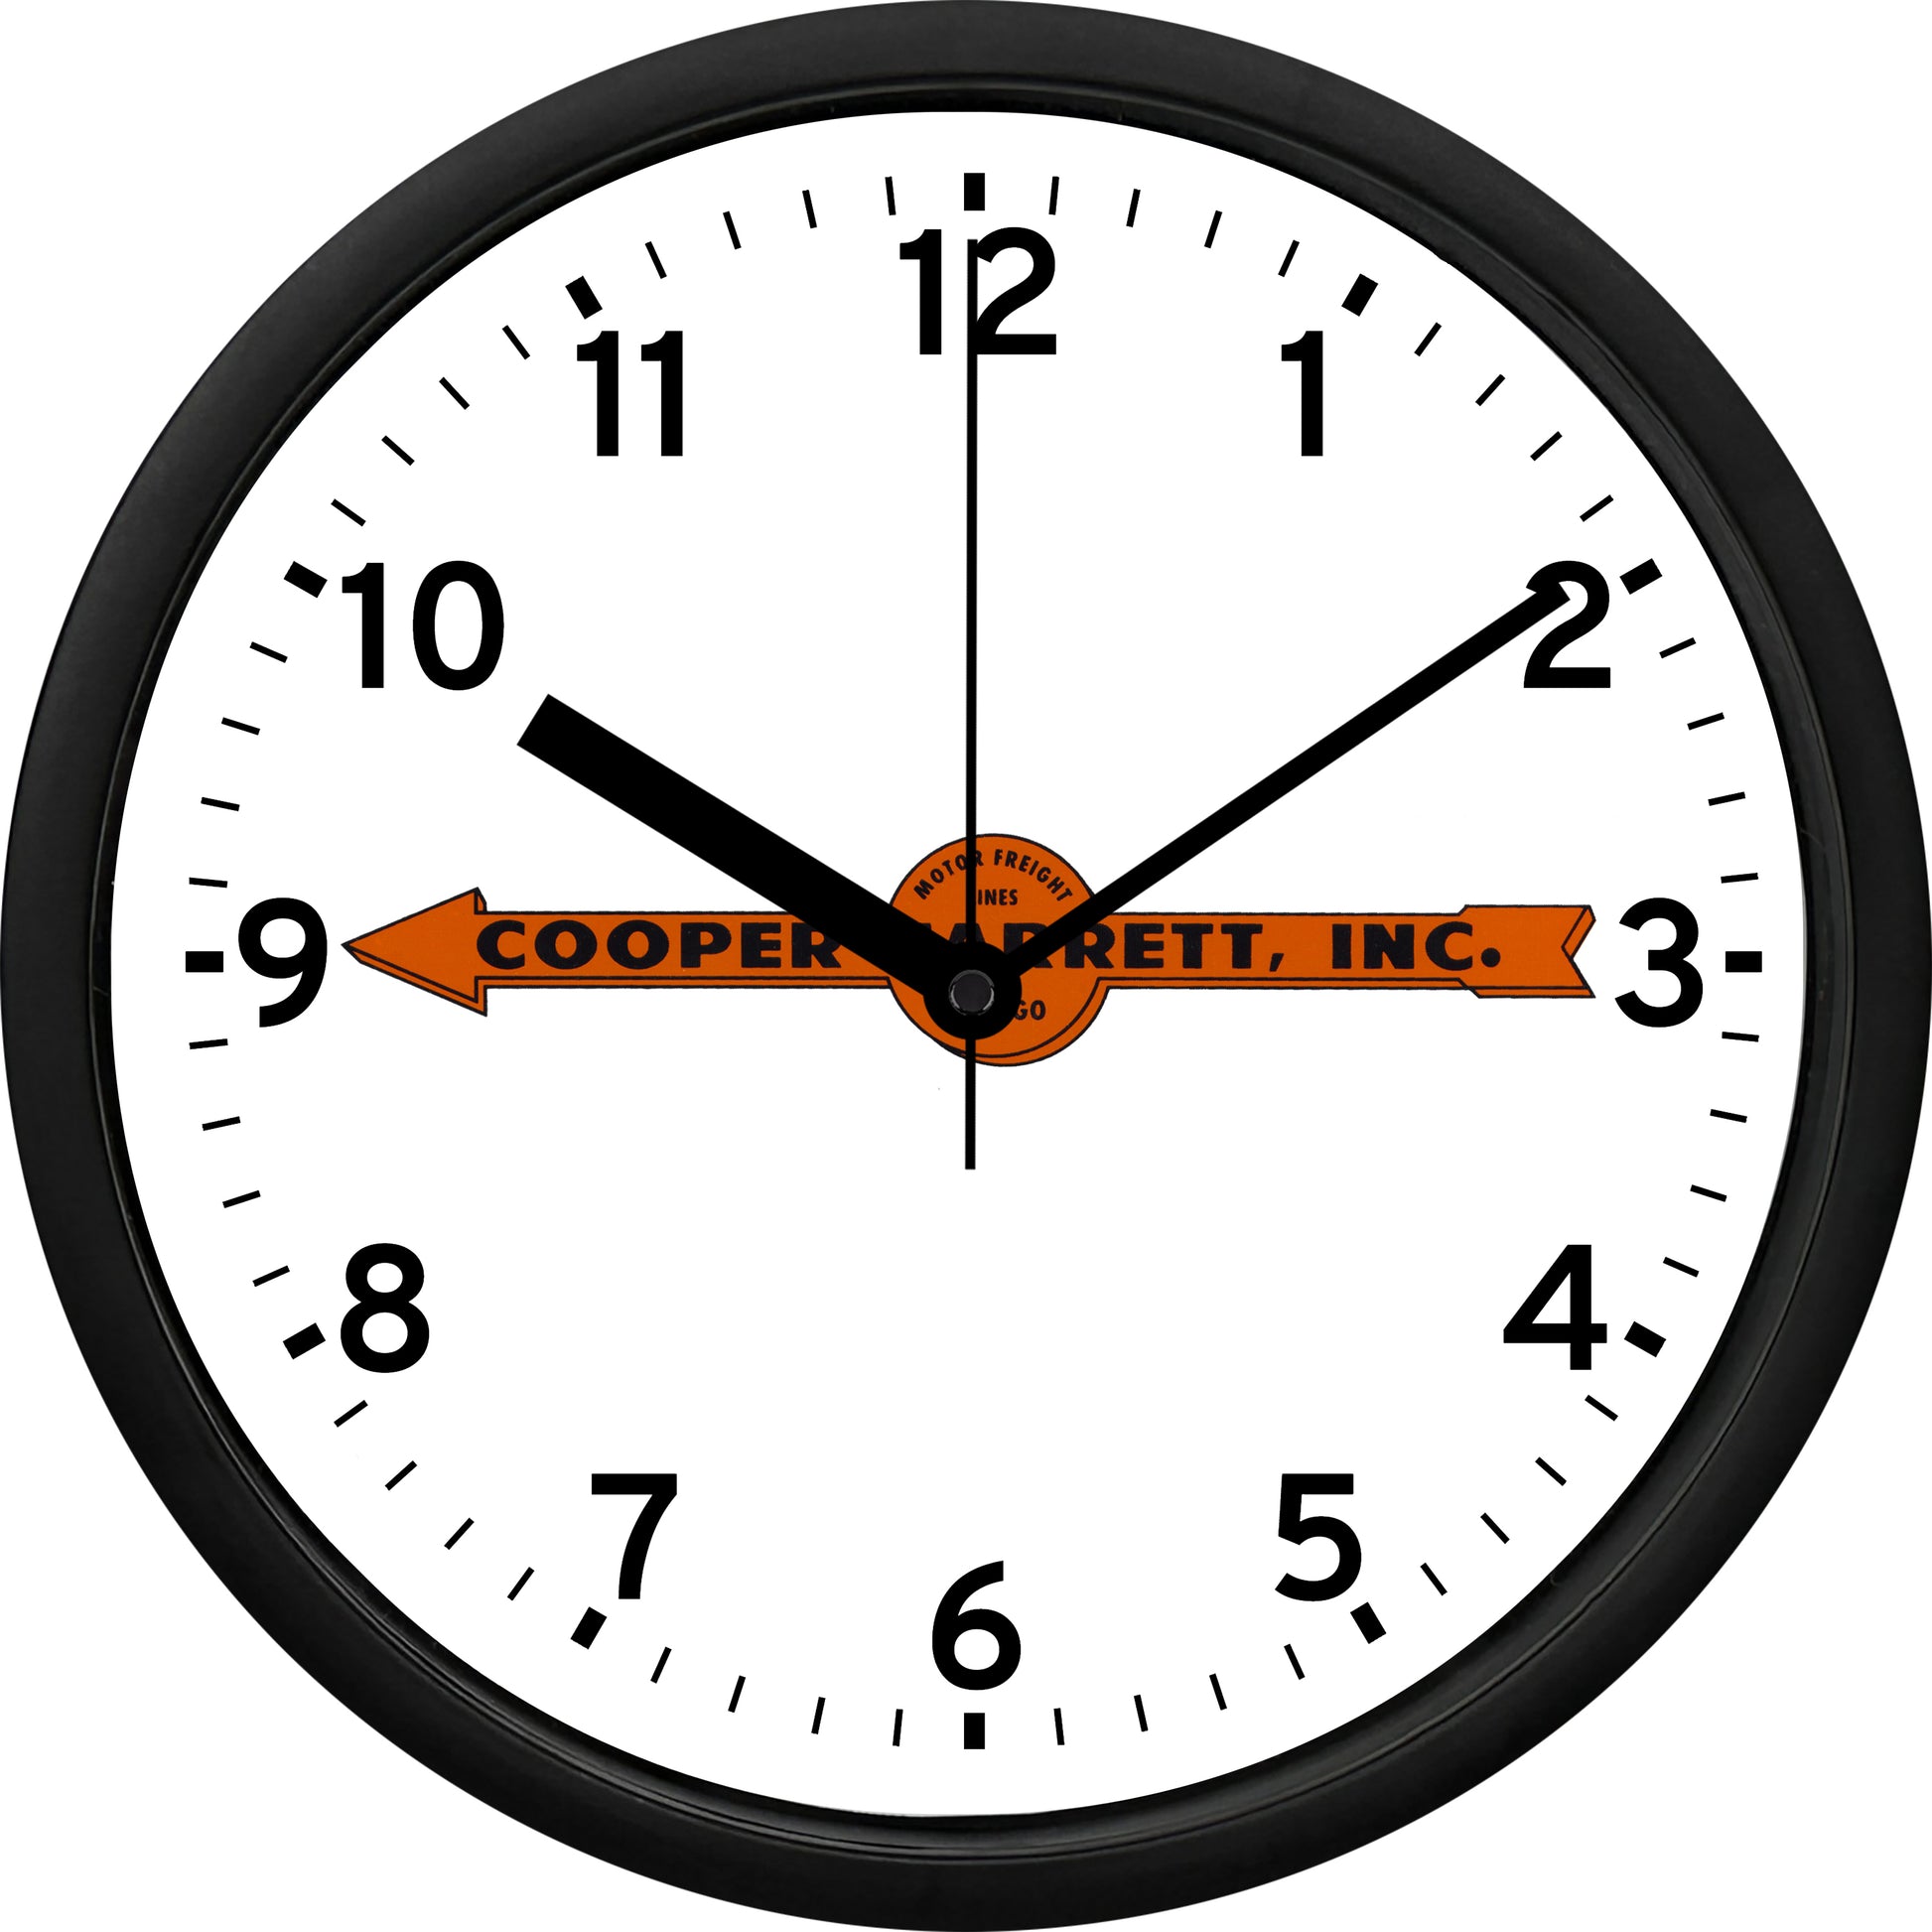 Cooper-Jarrett, Inc. Wall Clock